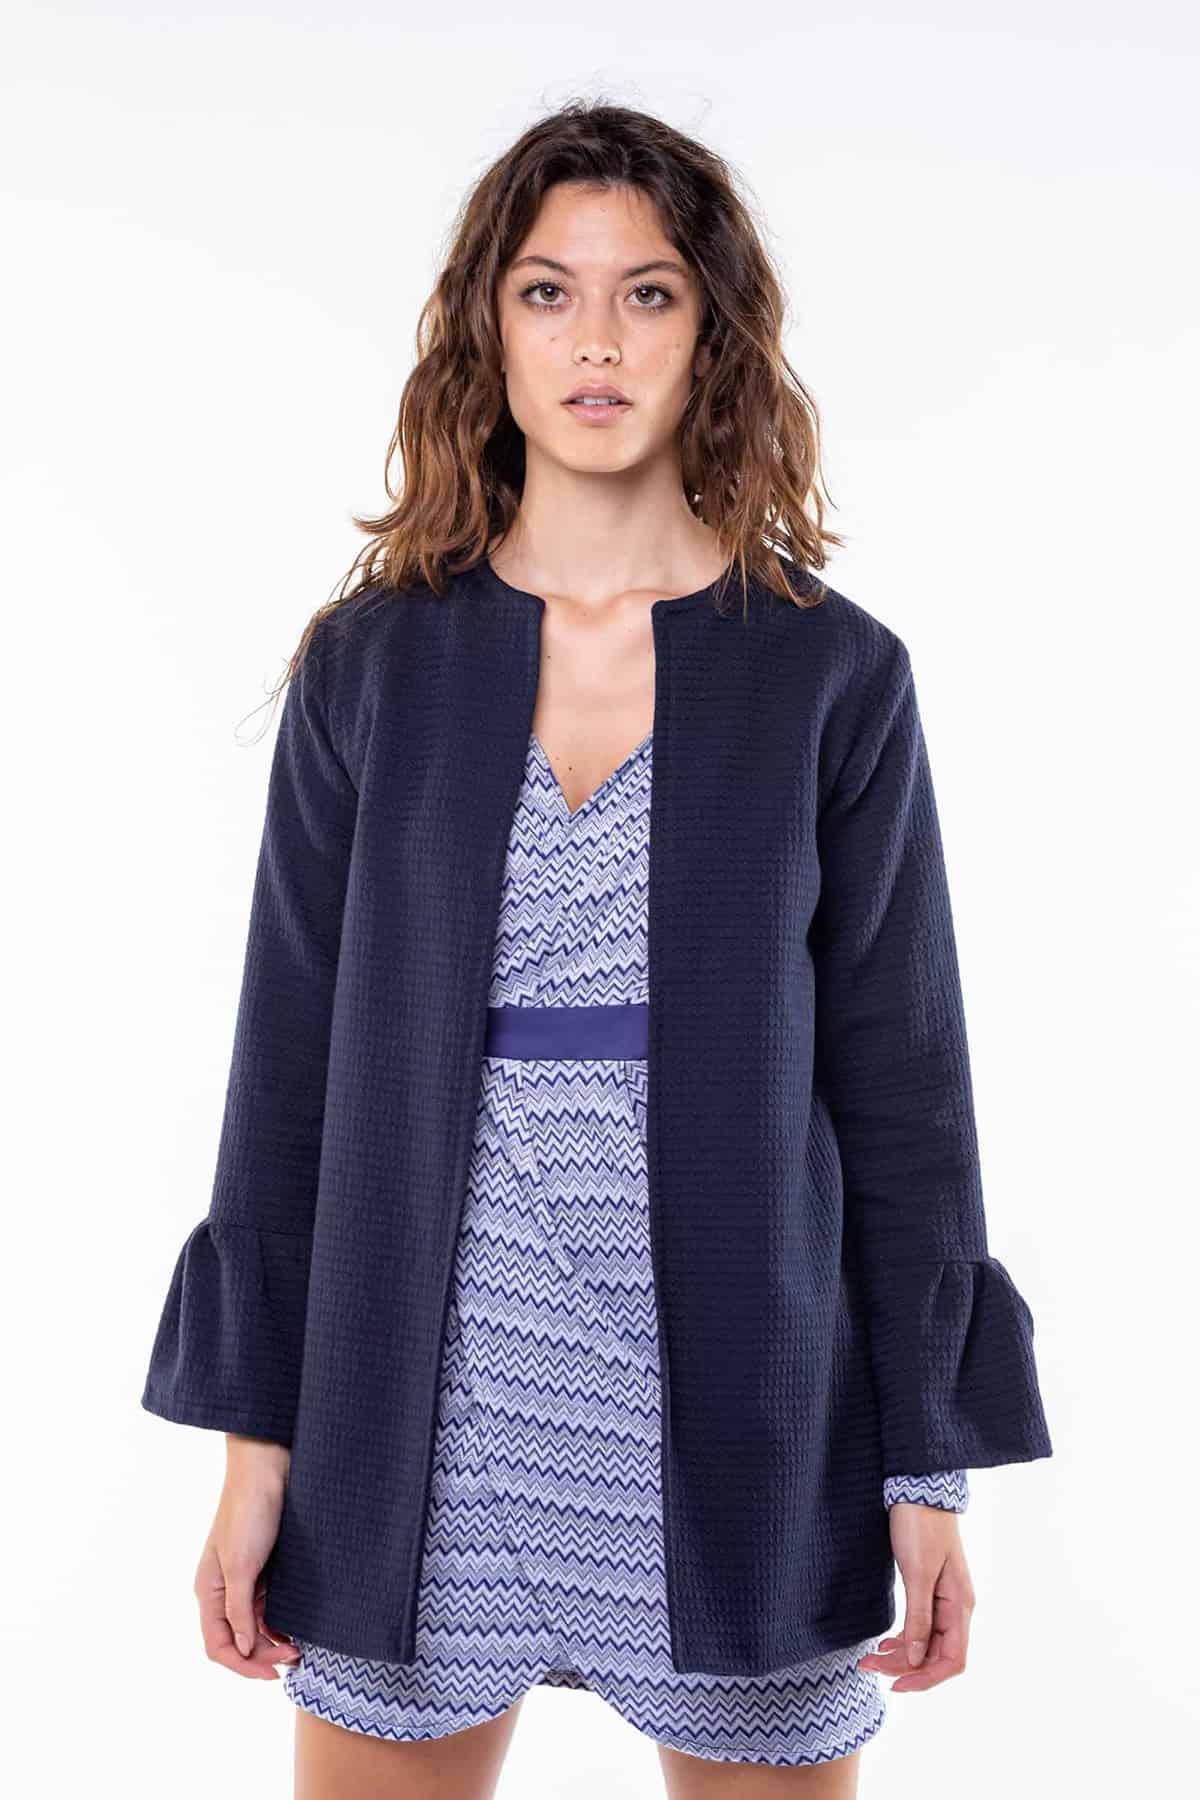 Giacca in cotone biologico lana biologica Teresa abbigliamento fibre naturali giacche sostenibili caldo autunno inverno moda sostenibile Malia Lab brand